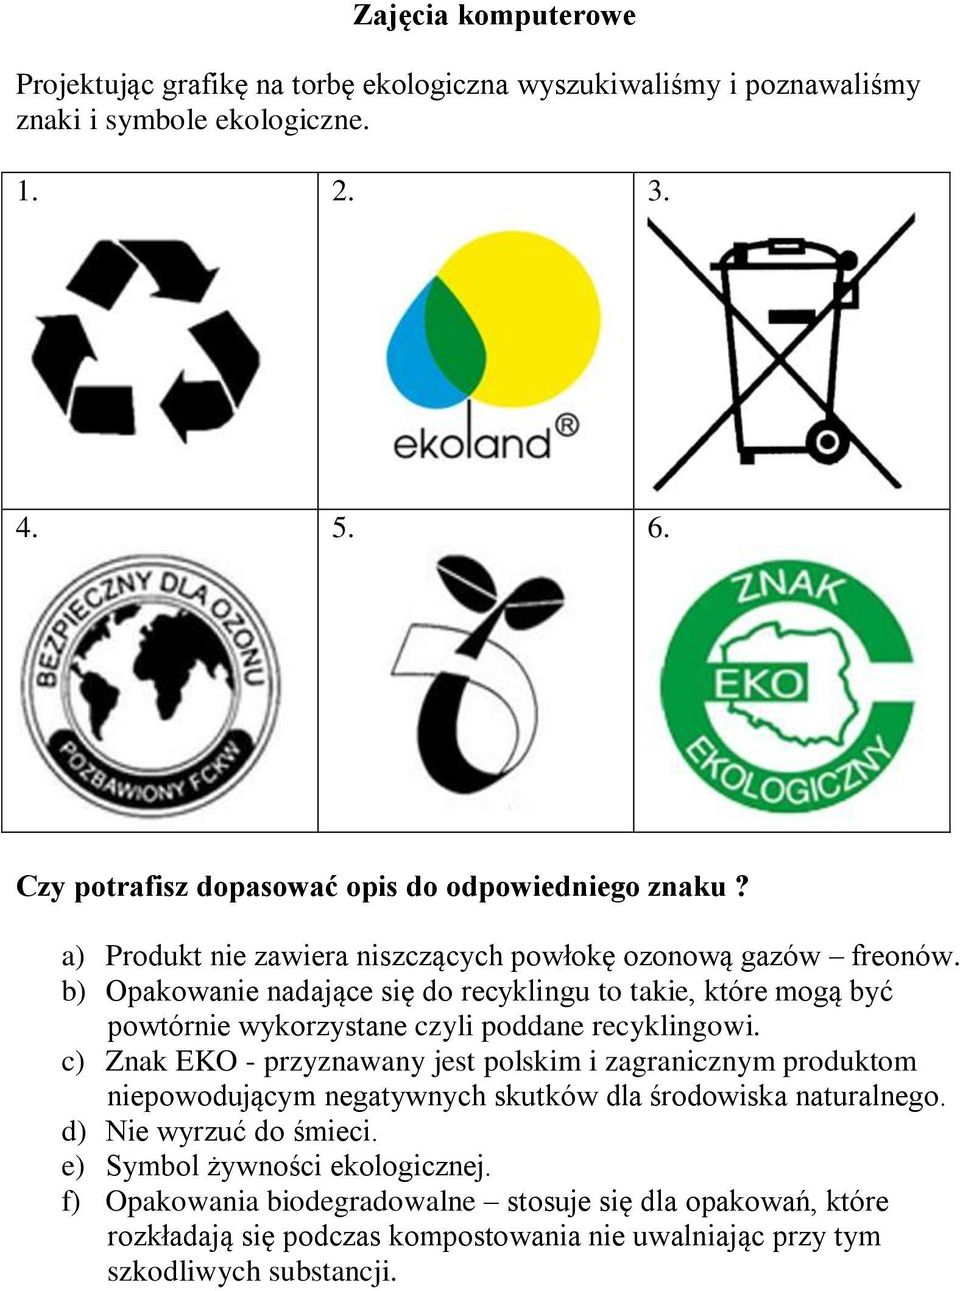 b) Opakowanie nadające się do recyklingu to takie, które mogą być powtórnie wykorzystane czyli poddane recyklingowi.